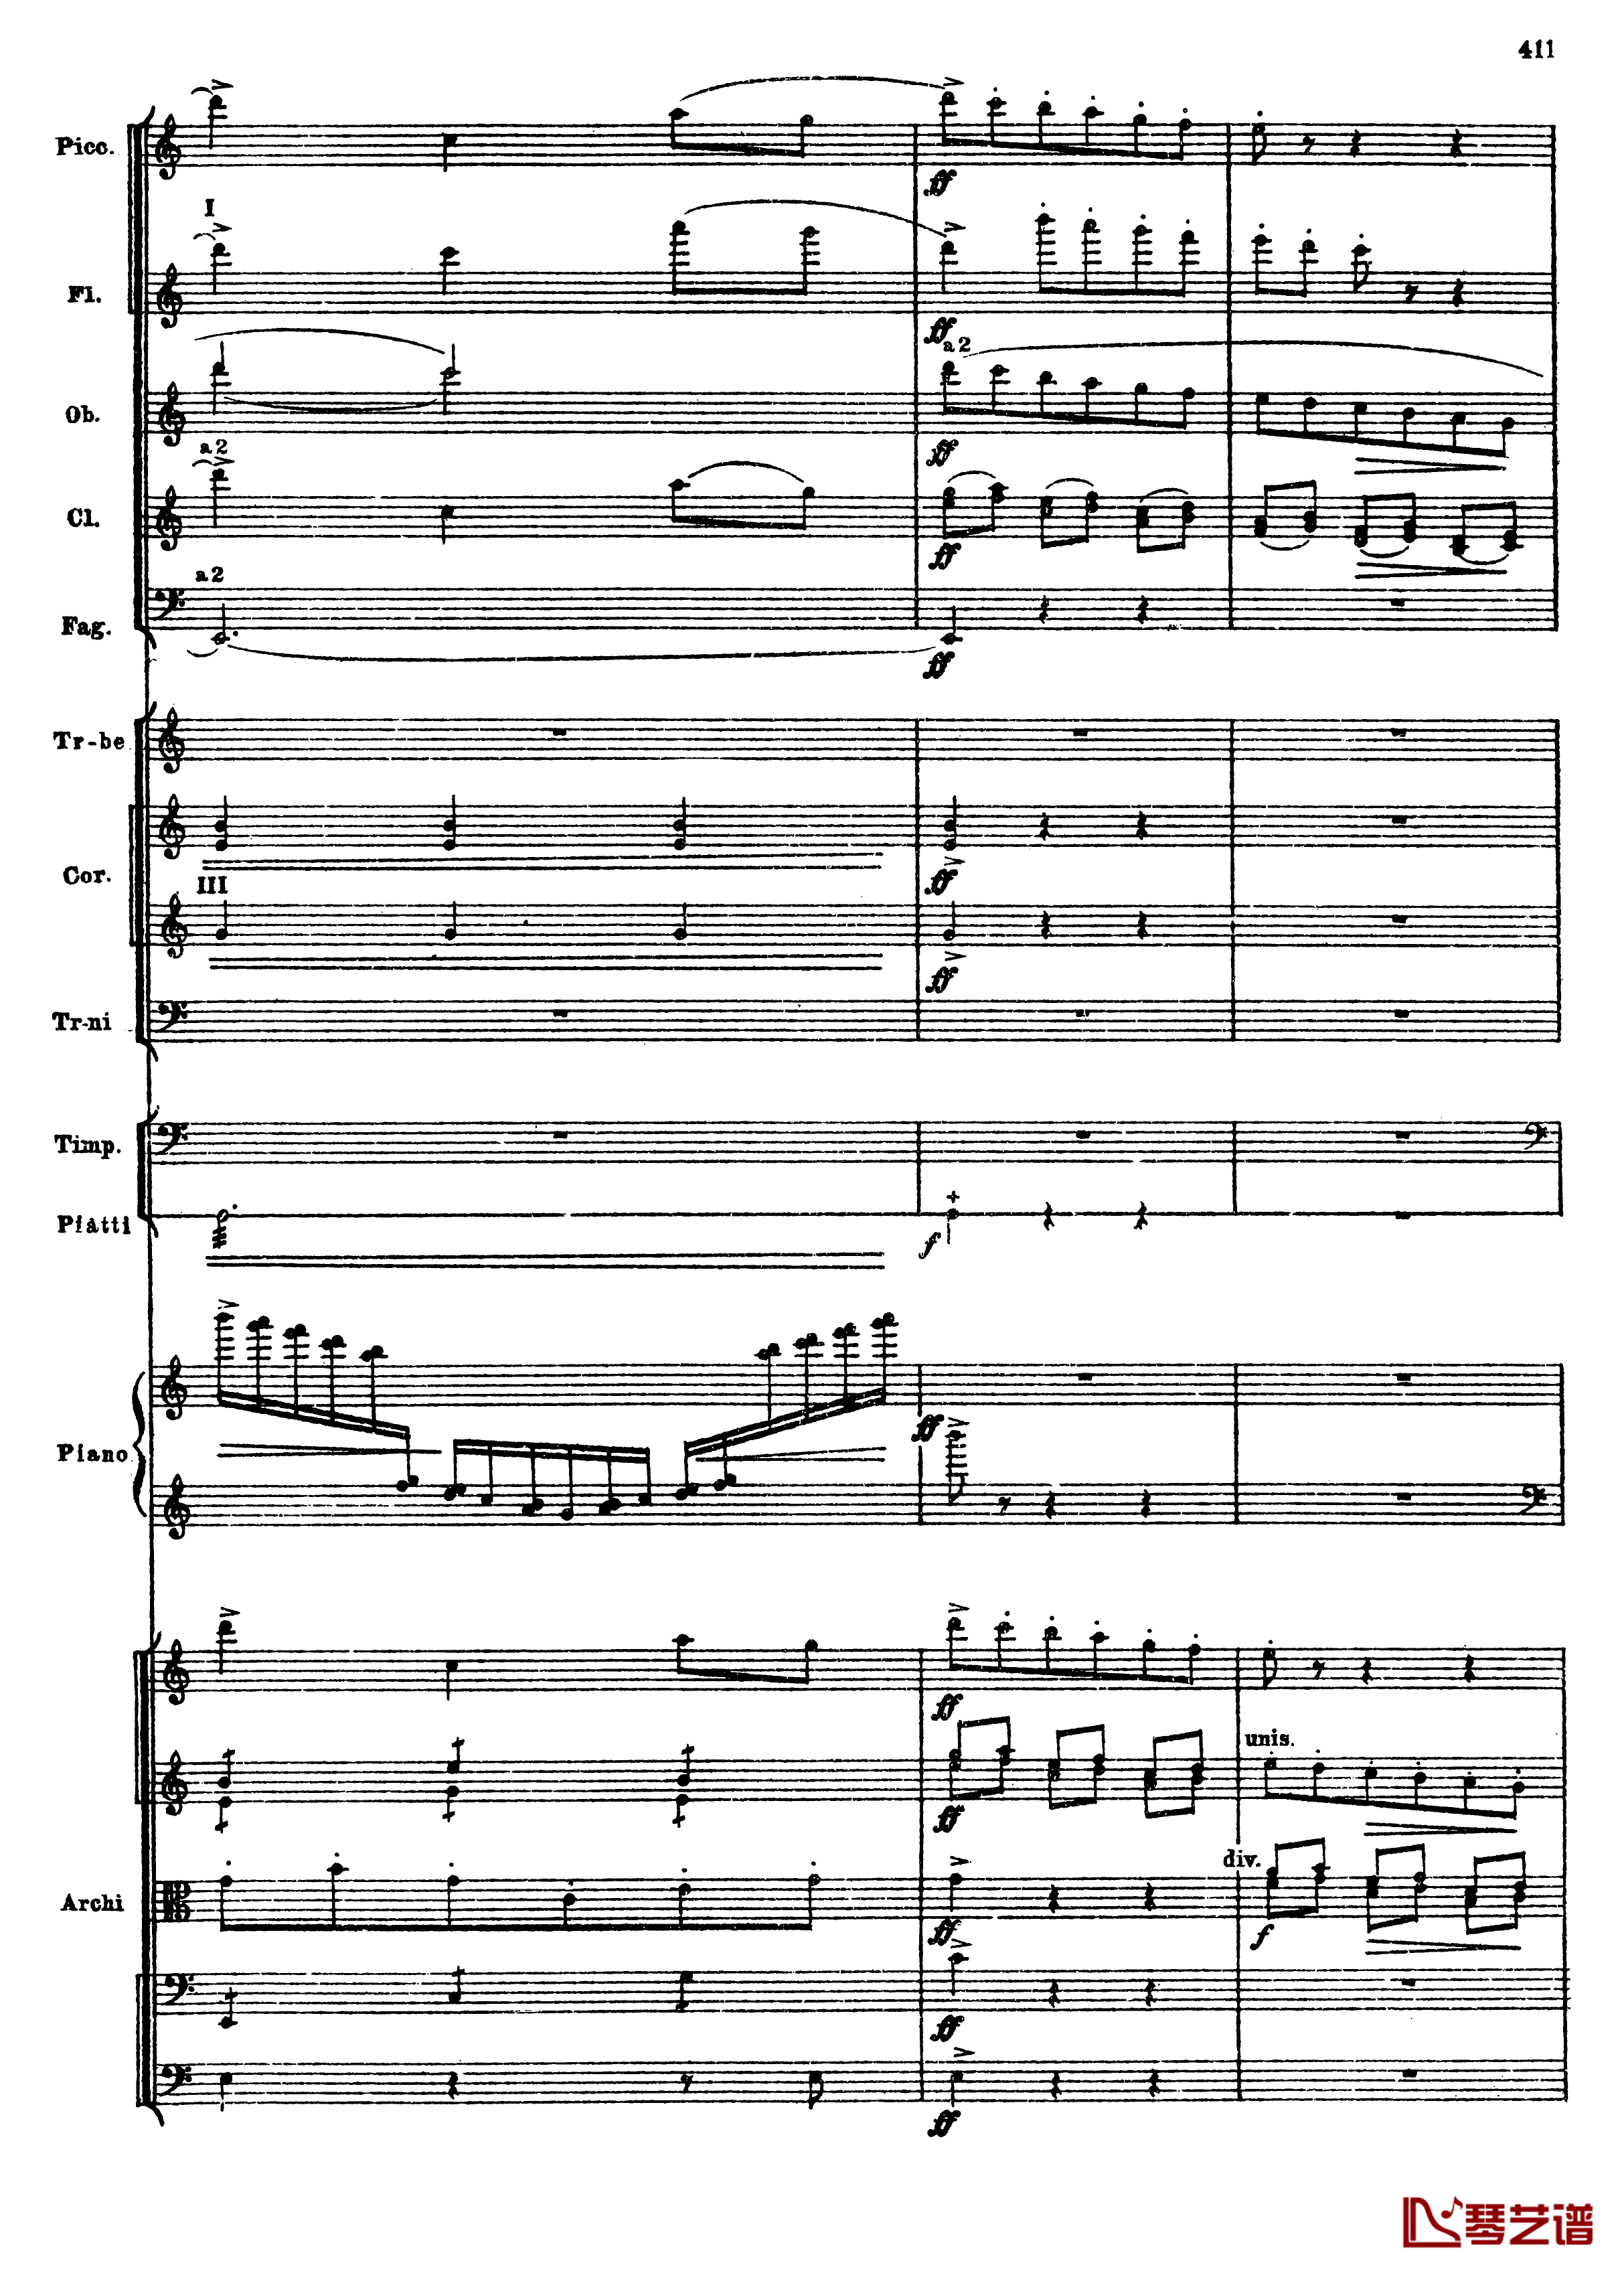 普罗科菲耶夫第三钢琴协奏曲钢琴谱-总谱-普罗科非耶夫143